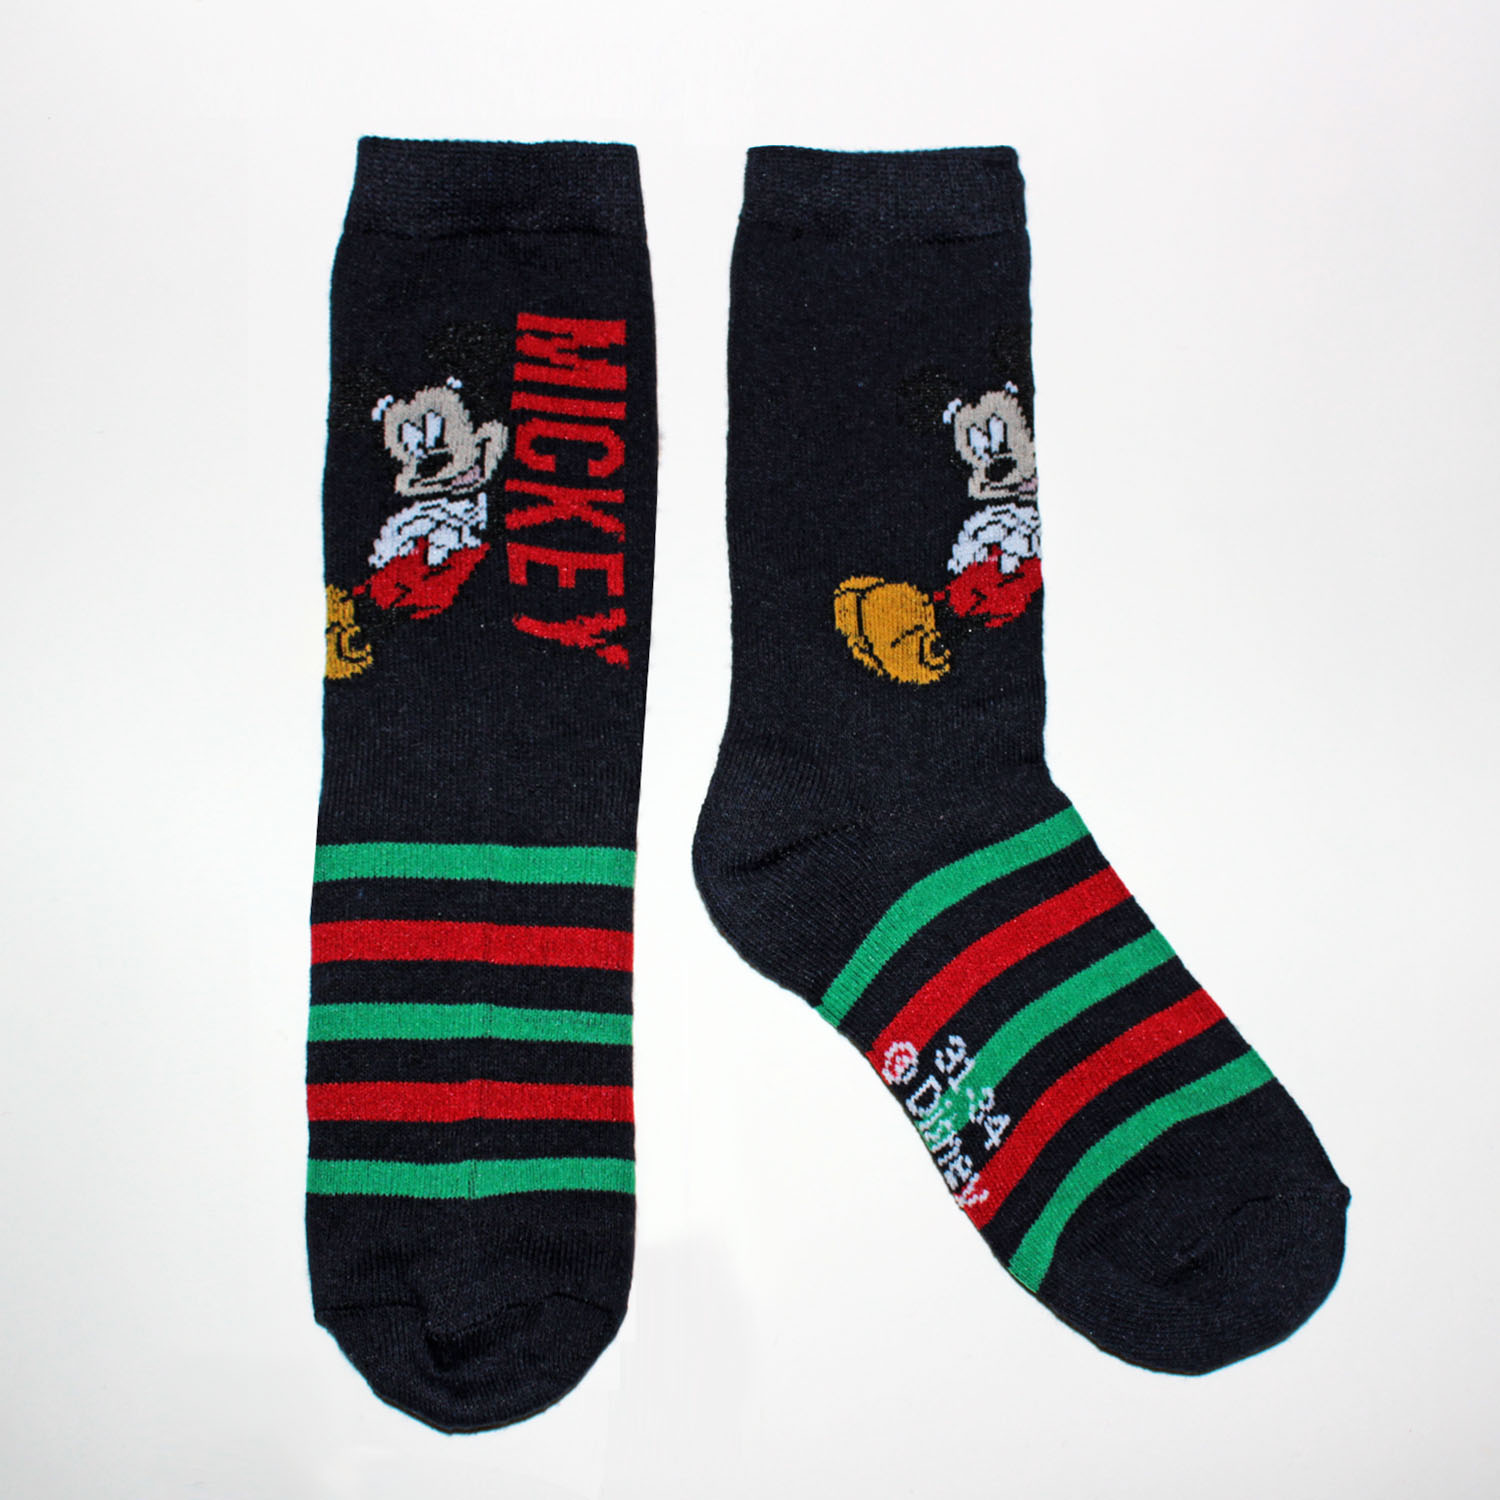 Pack de 3 calcetines de Mickey para niños en rojo, negro y verde